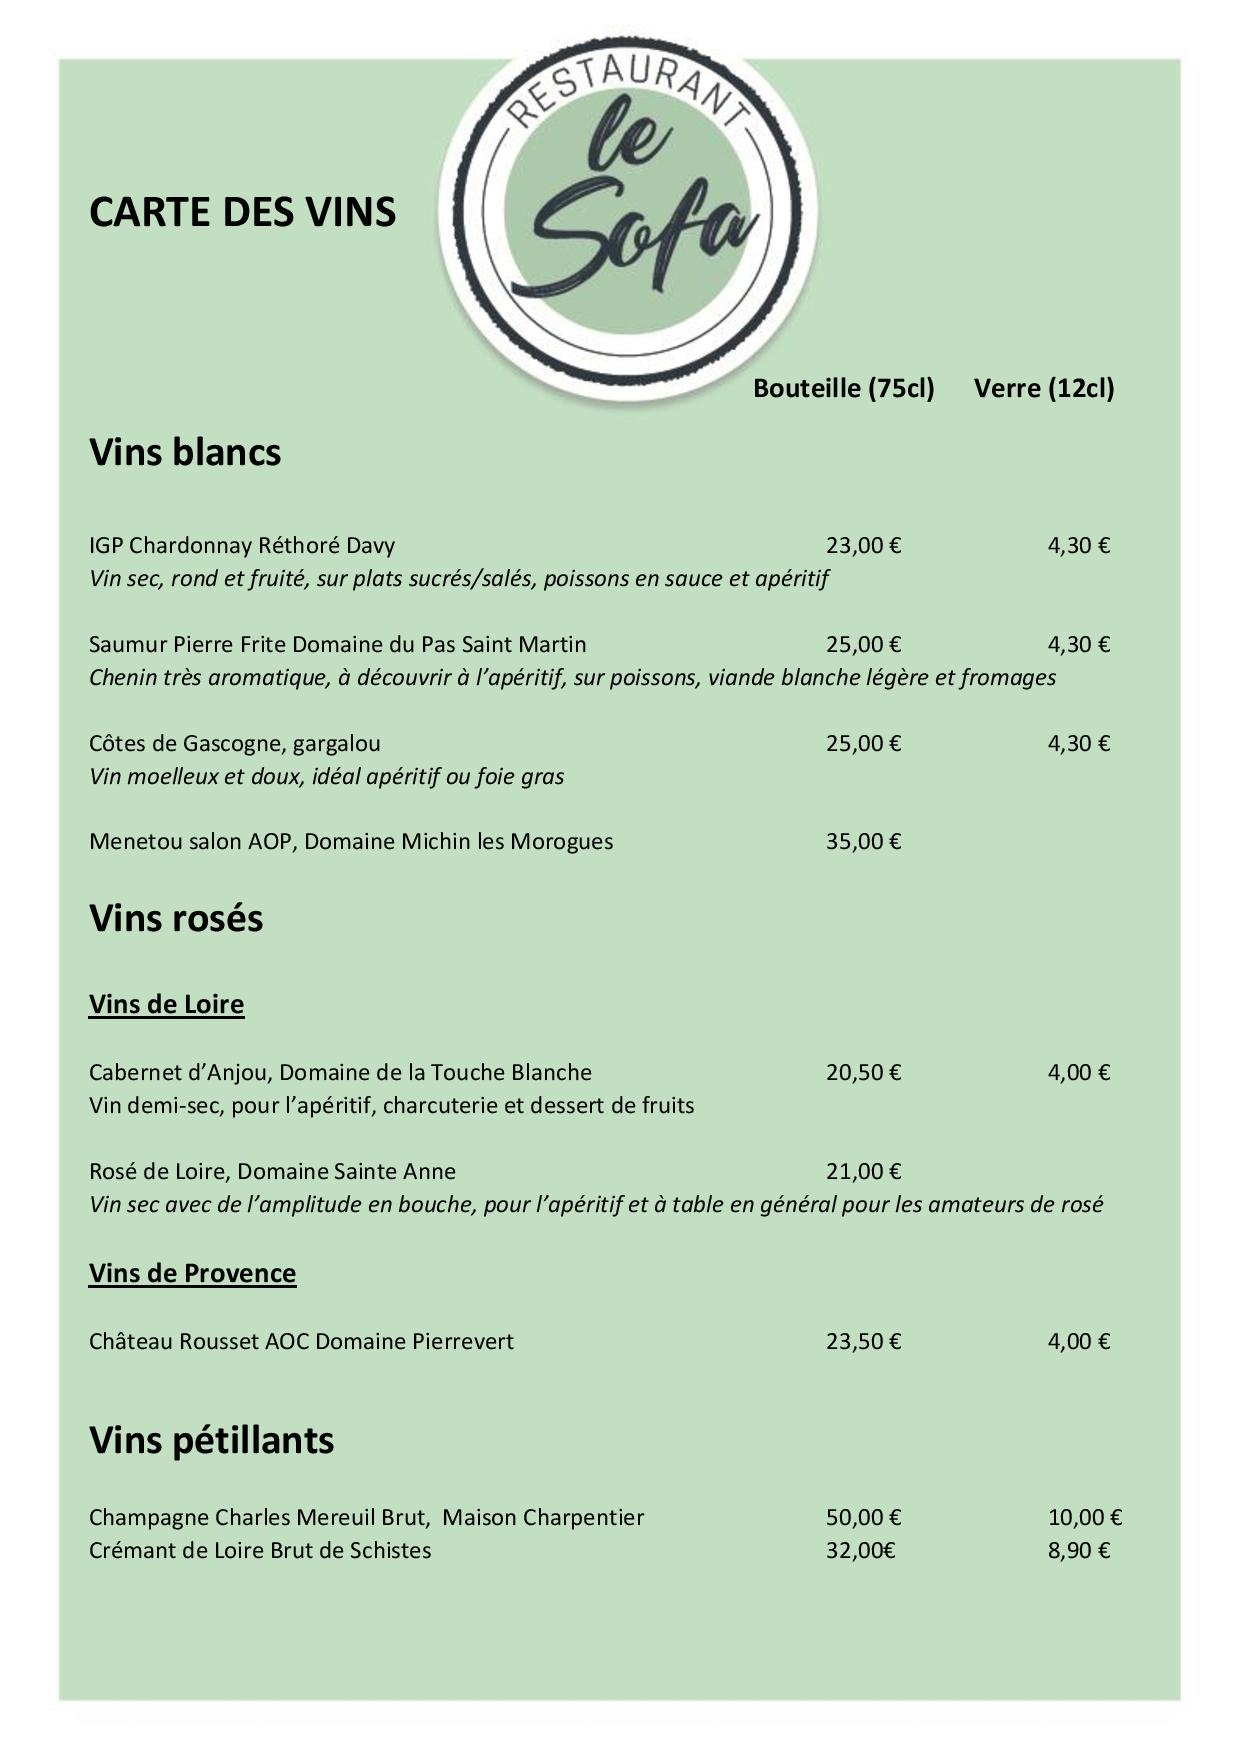 CarteLesofa vins blans 2022-page-001